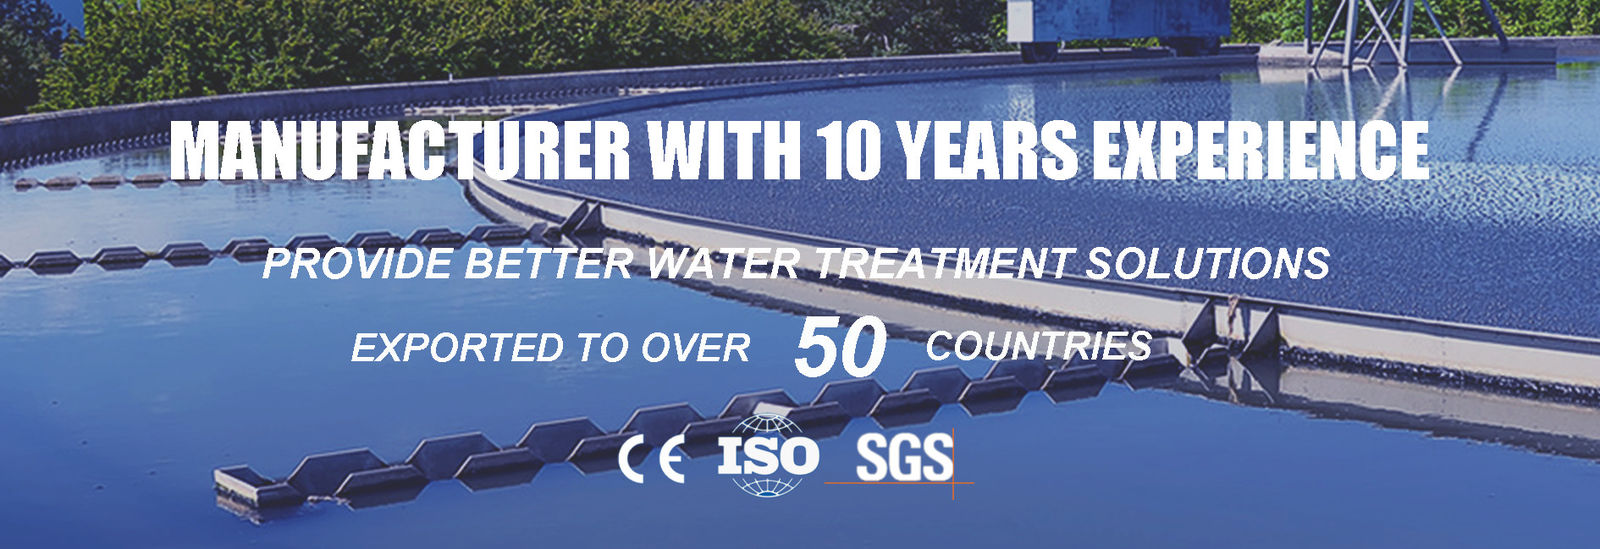 qualidade tratamento da água da indústria fábrica